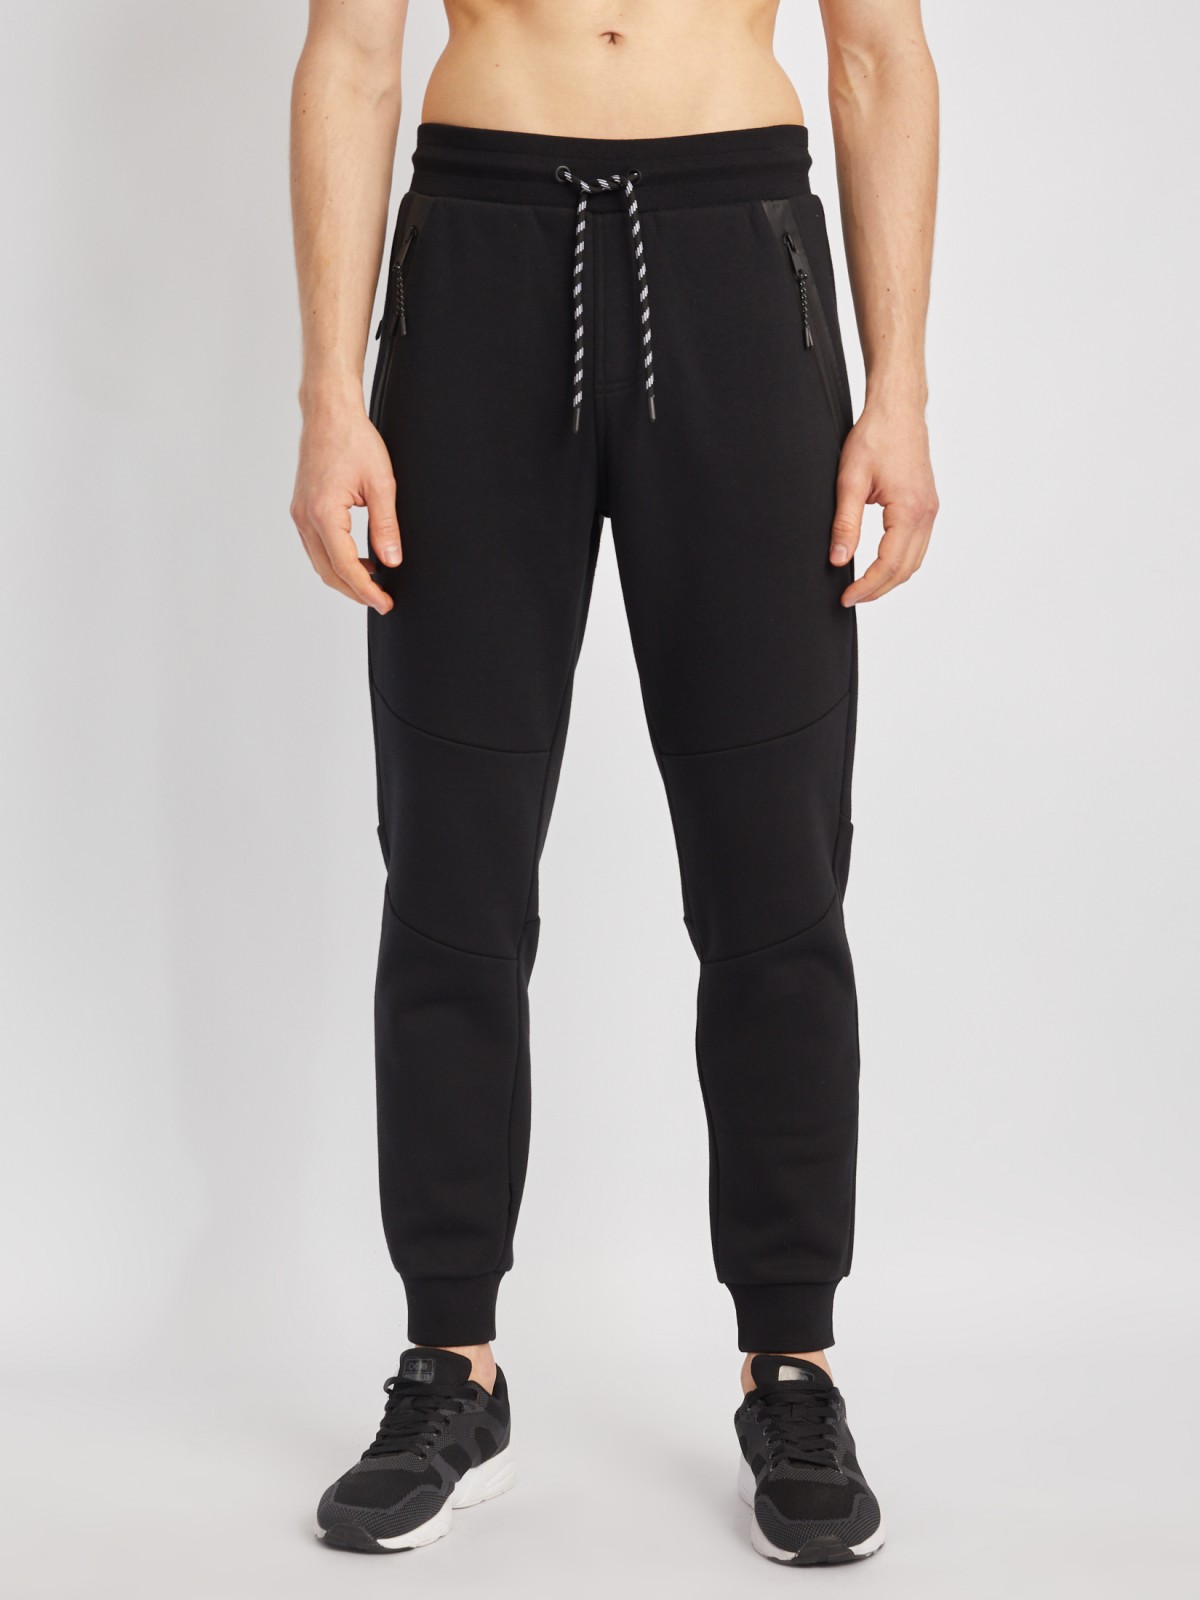 Утеплённые трикотажные брюки-джоггеры в спортивном стиле zolla 014117660063, цвет черный, размер S - фото 2